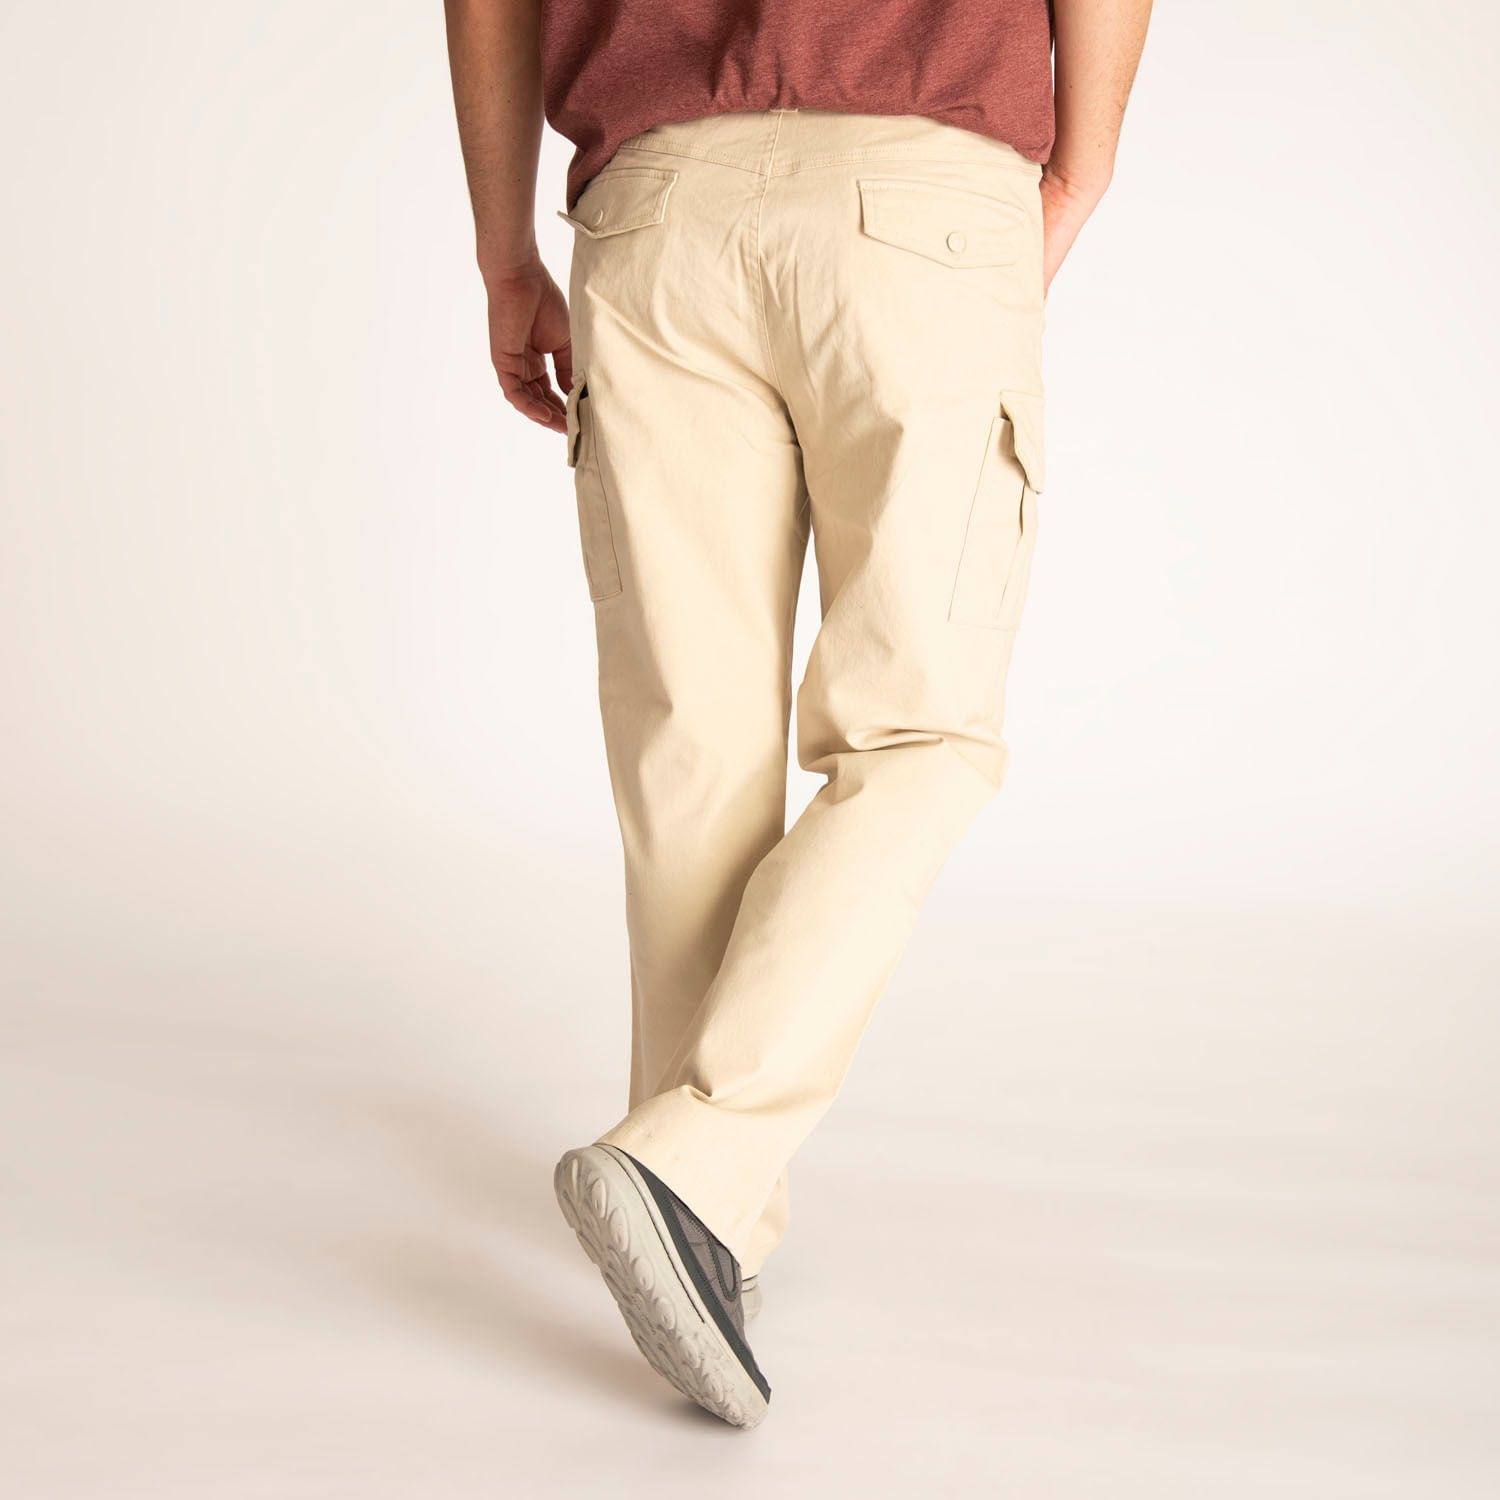 Pantalon Hombre Cargo-Merrell Chile -   Sitio Oficial -  Encuentra Vestuario, Calzado y más